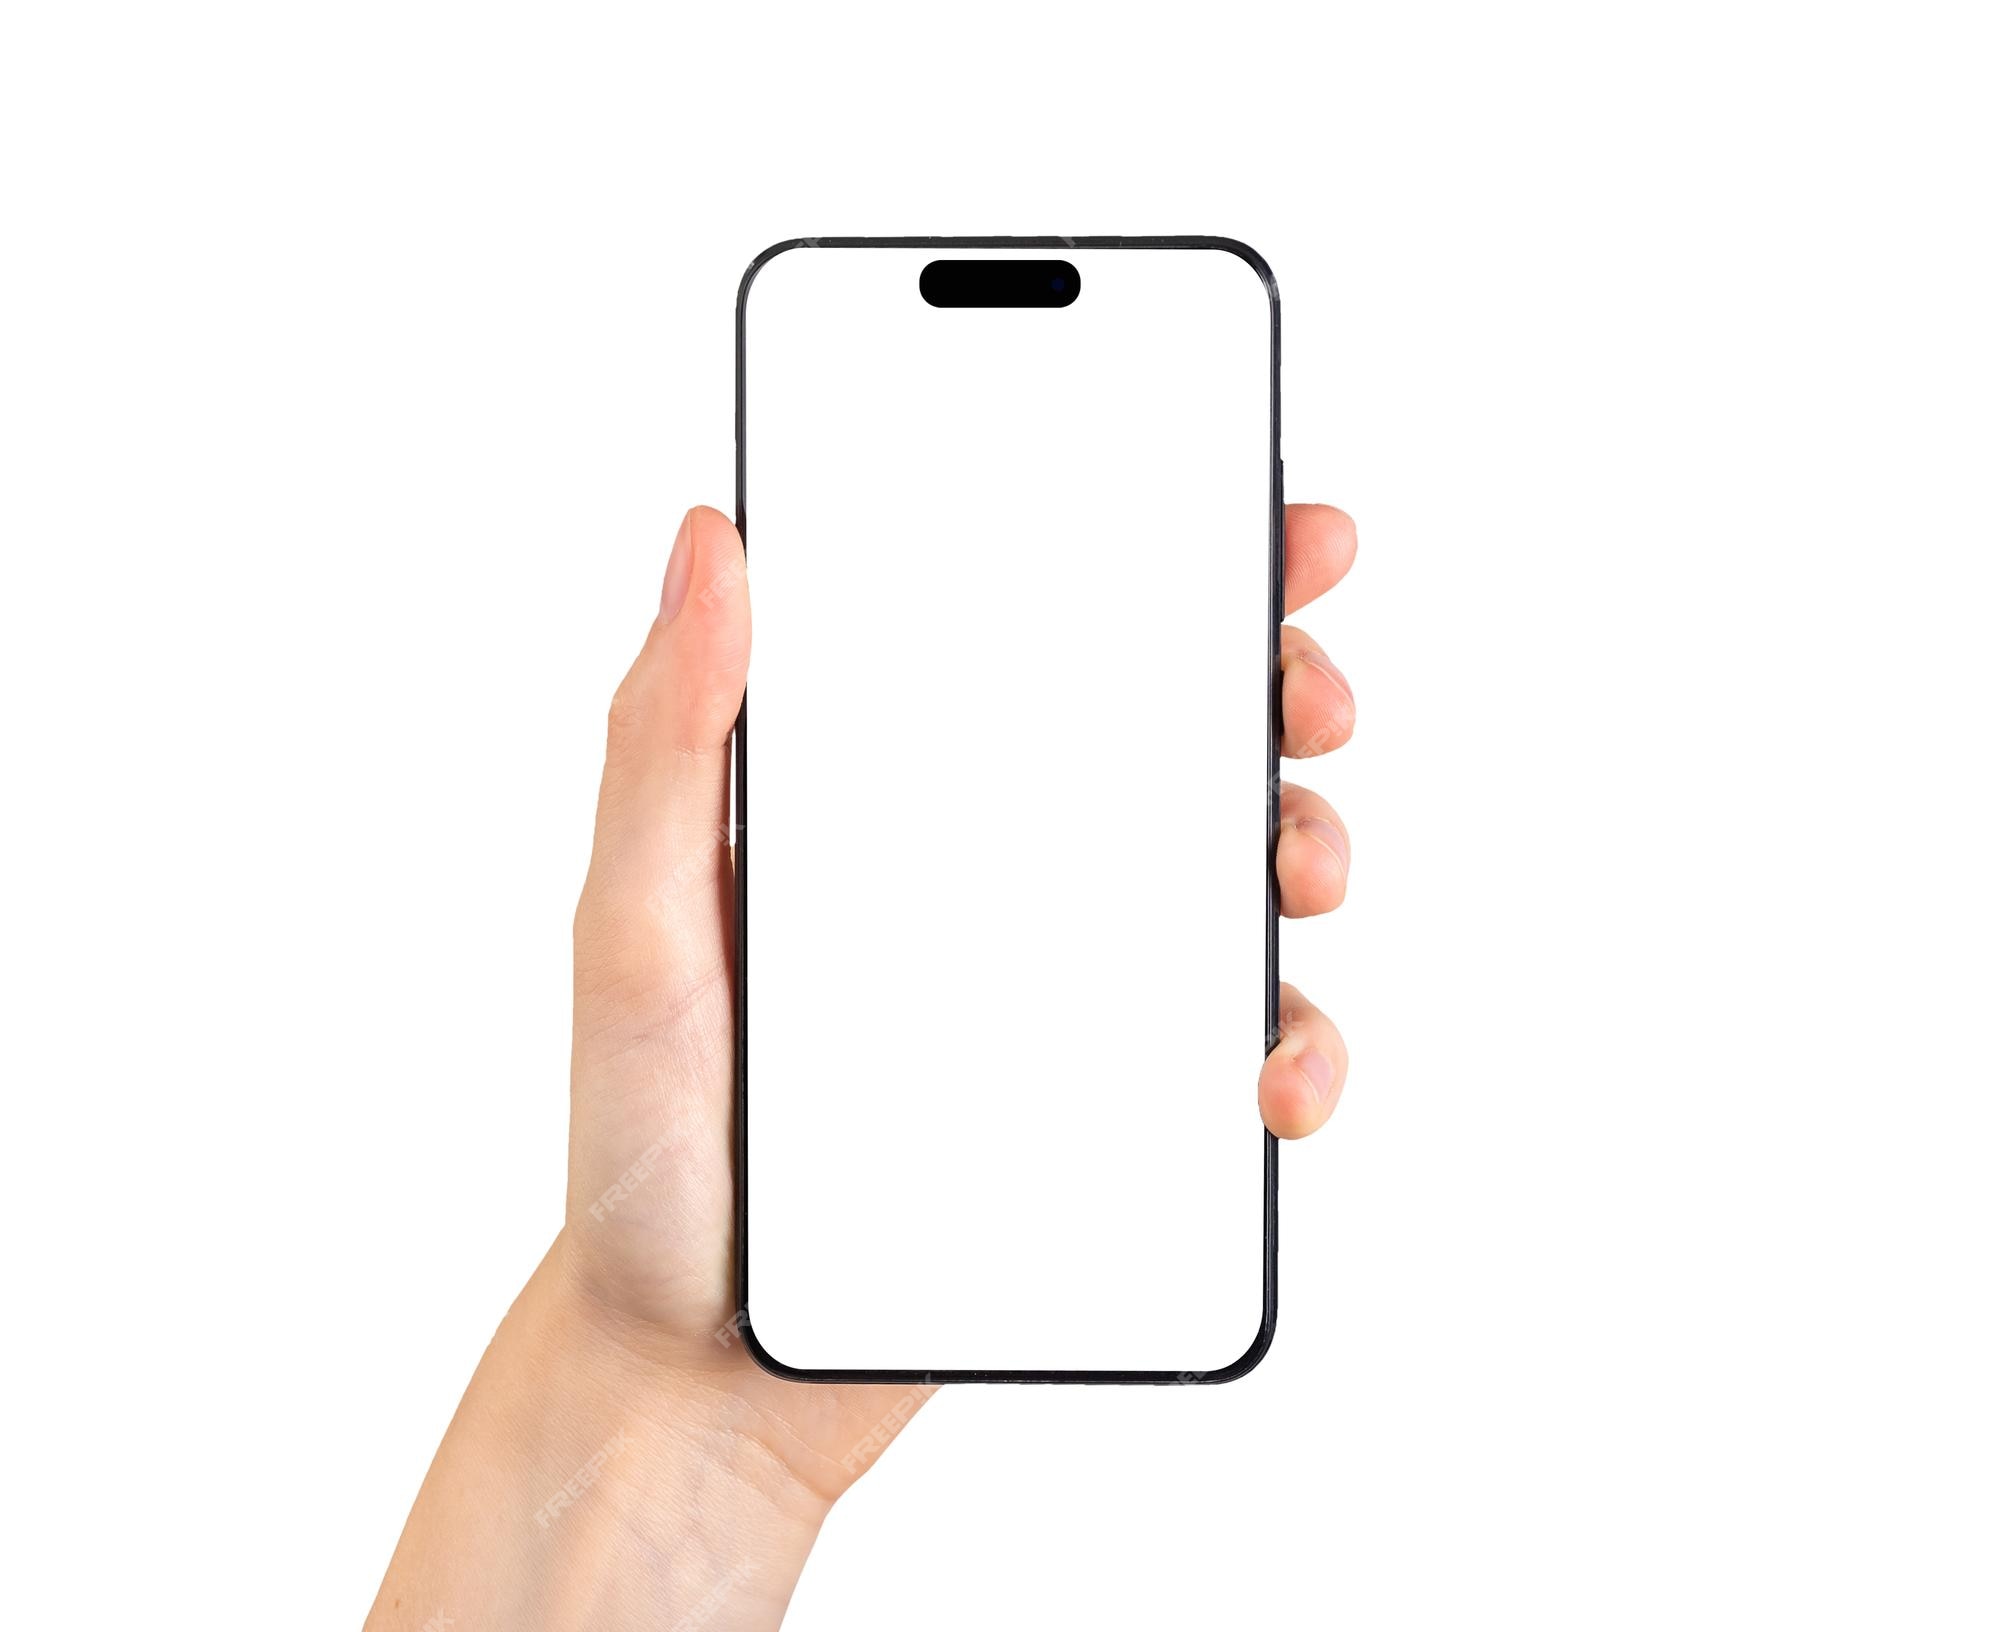 Ảnh điện thoại di động trắng: Ảnh điện thoại di động trắng sẽ mang lại cảm giác tinh tế và đơn giản cho bất kỳ ai sử dụng nó. Nhấp vào hình ảnh để xem các loại điện thoại trắng đẹp nhất trên thị trường hiện nay.